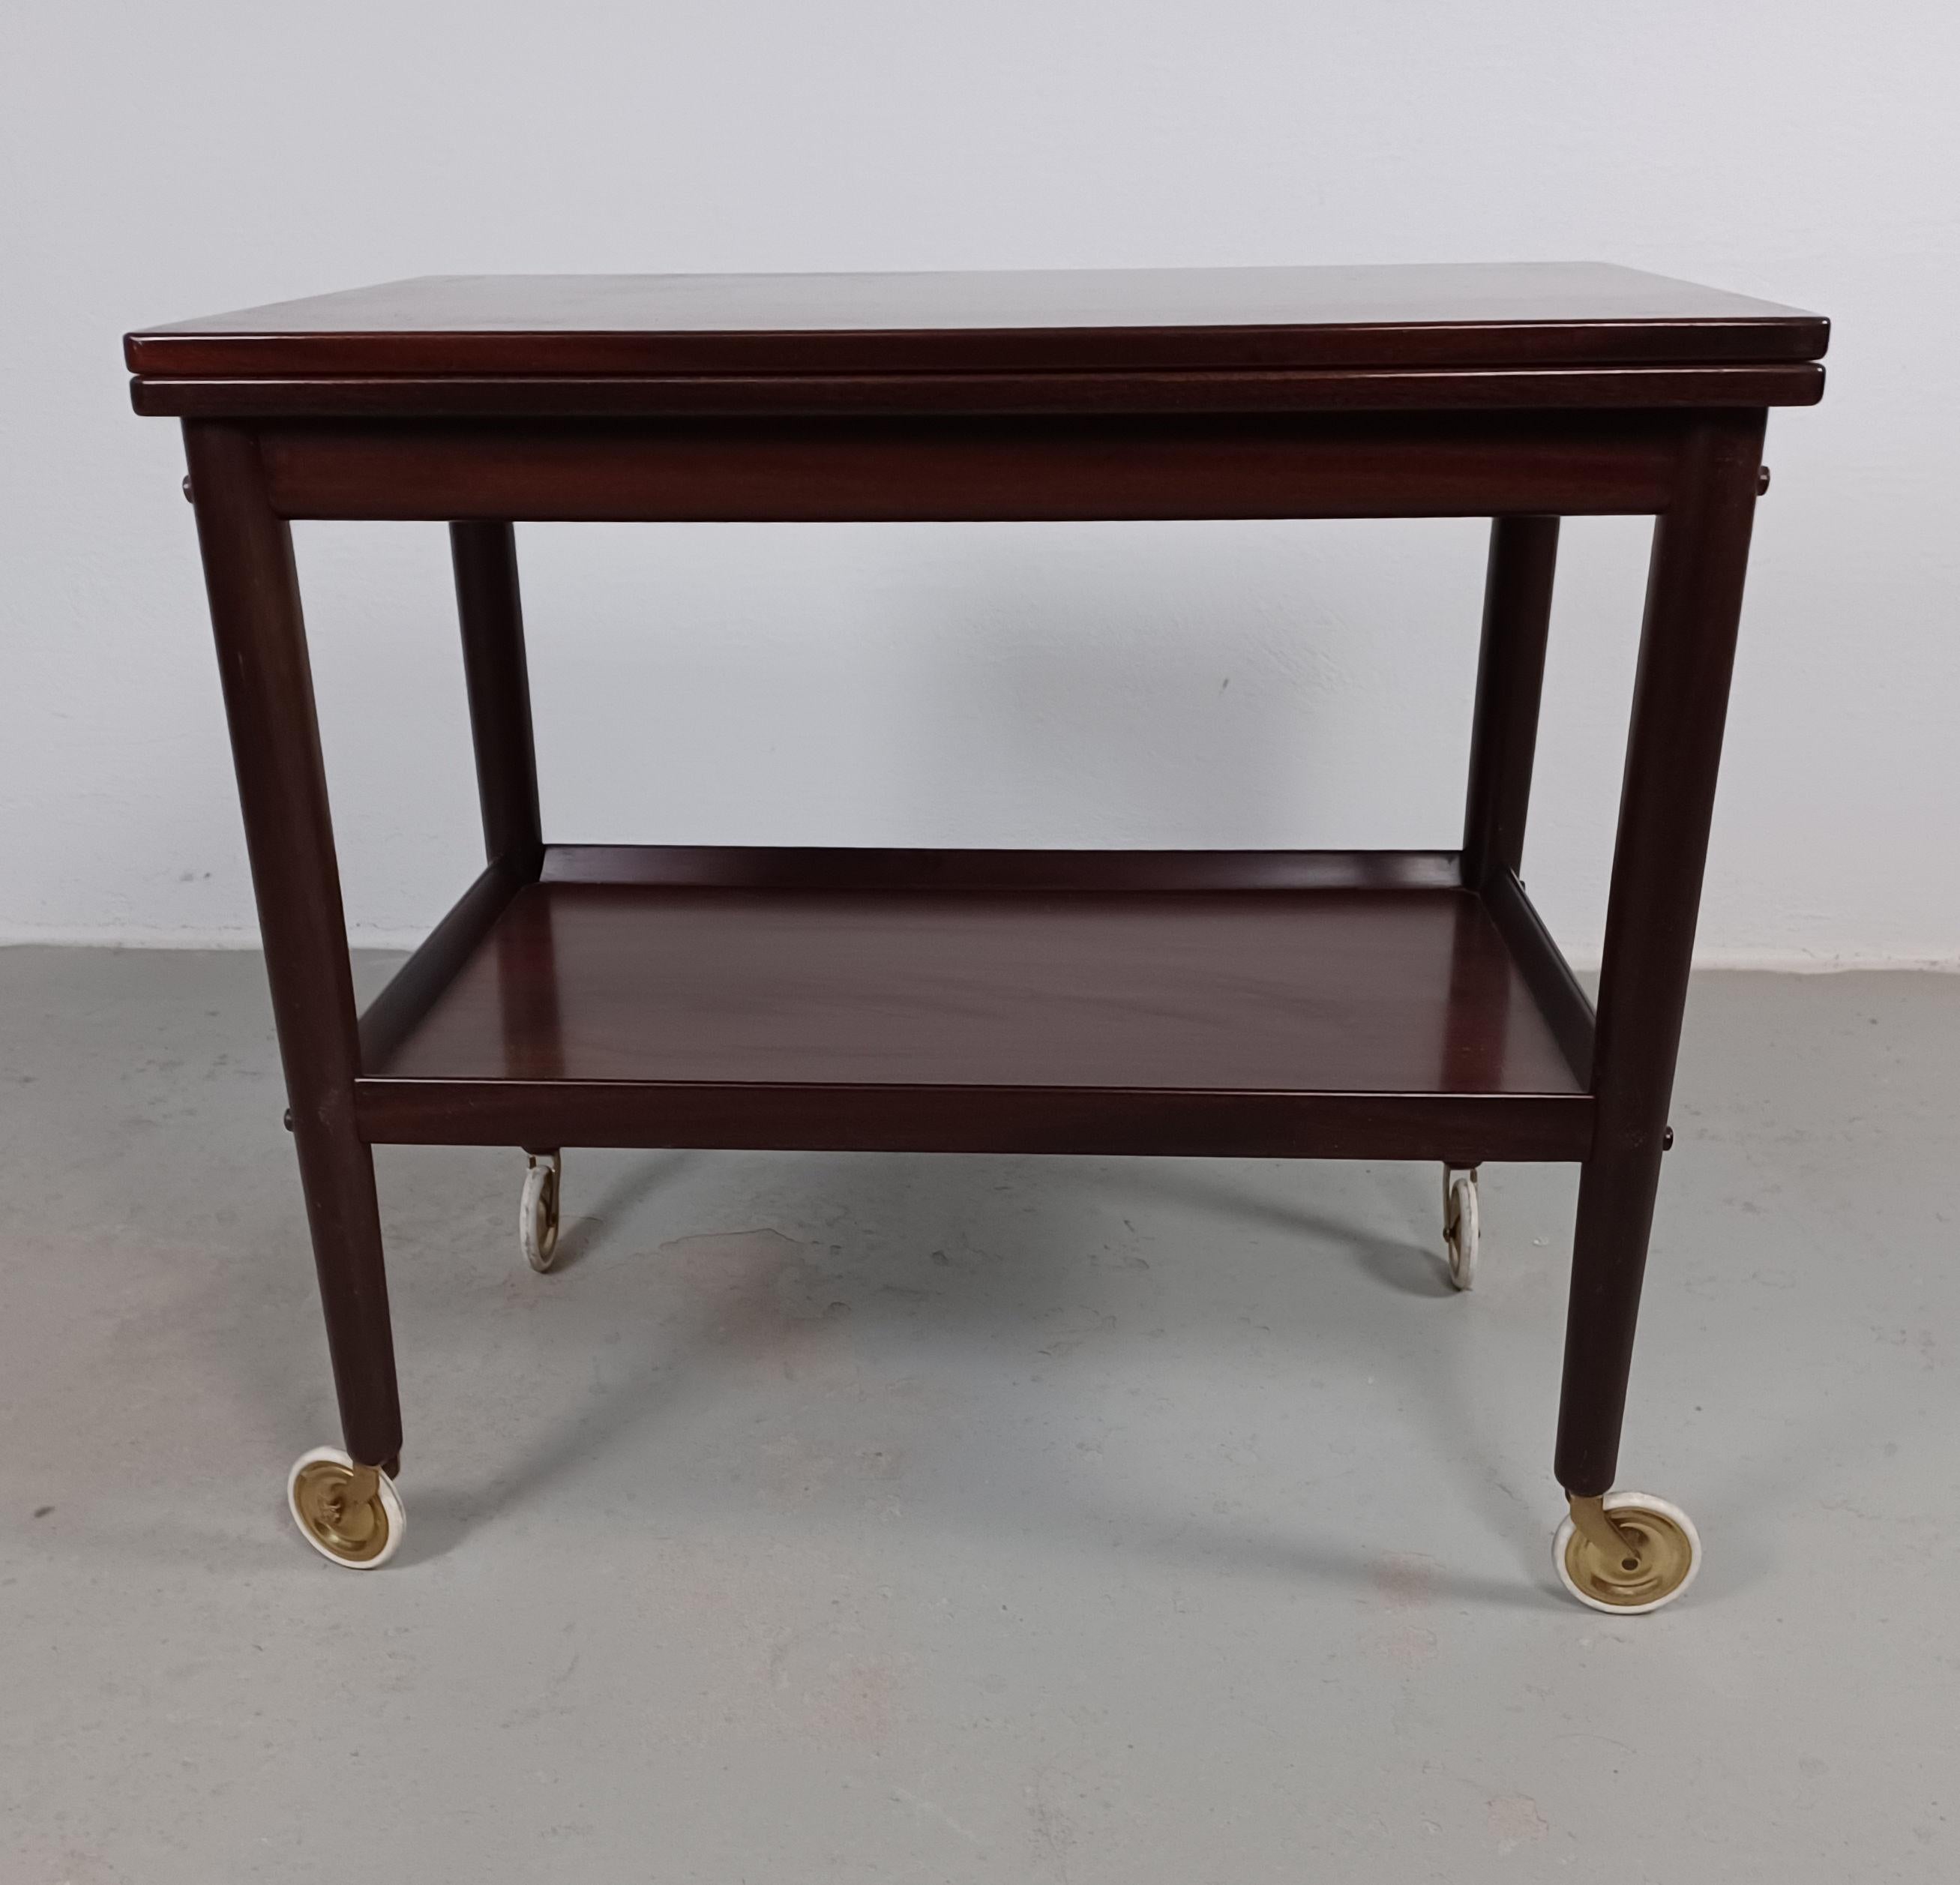 1960er Jahre Ole Wanscher restaurierte multifunktionale Rungstedlund Mahagoni Beistelltisch.

Der Beistelltisch besteht aus einer verstellbaren Tischplatte, die zur Seite gedreht werden kann und den Tisch so von einem kleinen Serviertisch /